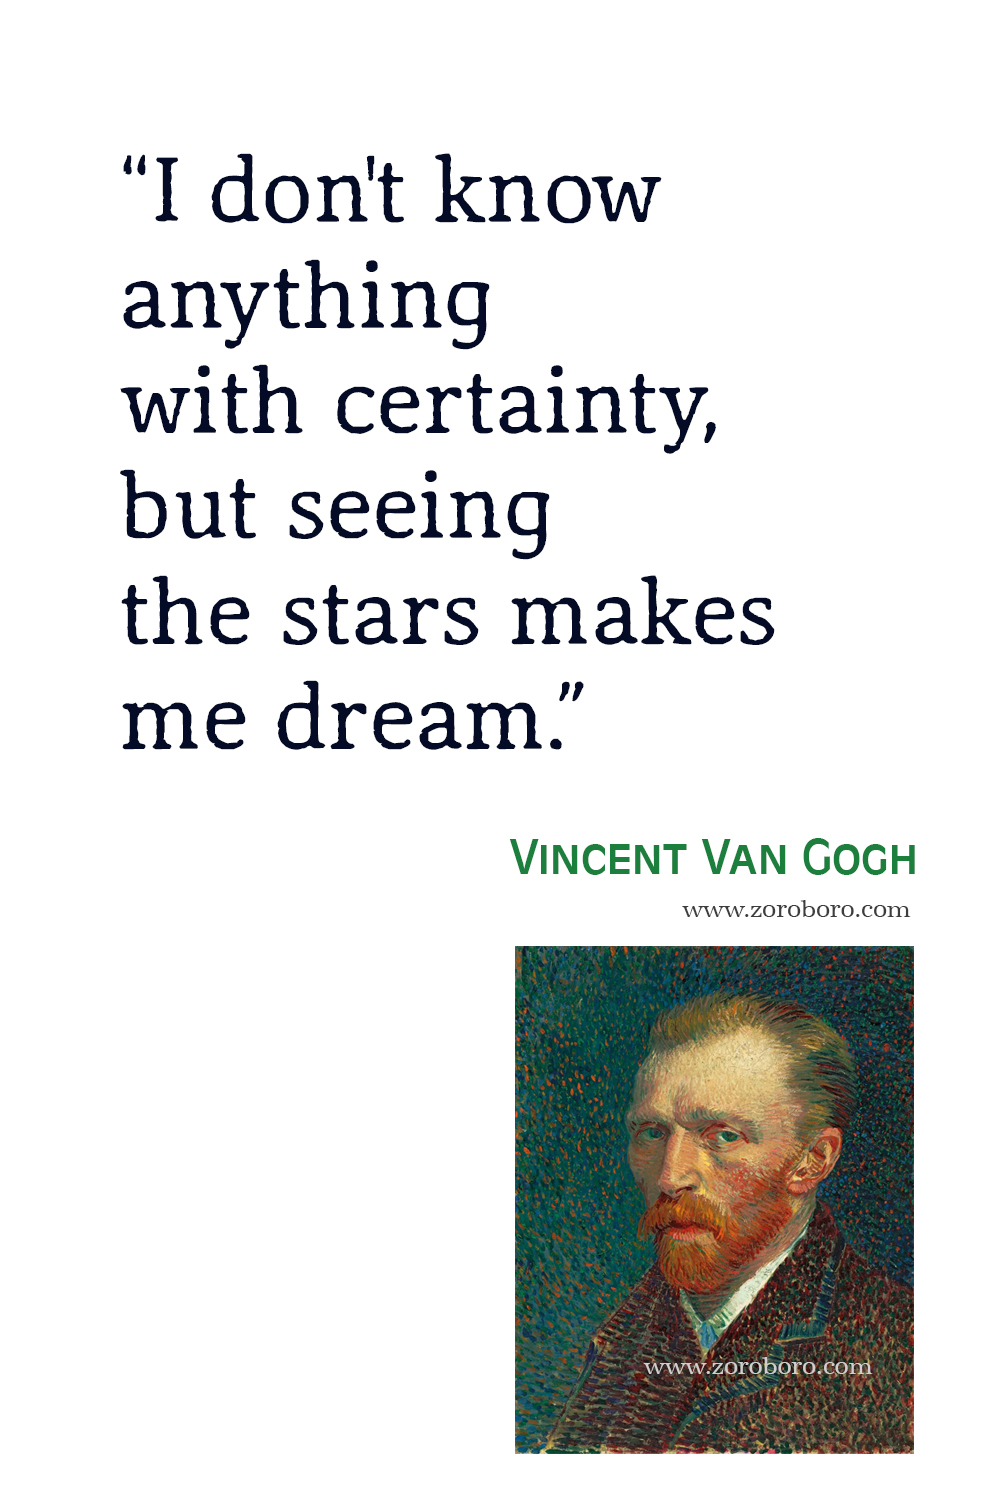 Vincent Van Gogh Quotes,Vincent Van Gogh Art, Dreams, Heart, Vincent Van Gogh Inspirational, Vincent Van Gogh Painting, Vincent Van Gogh Quotes